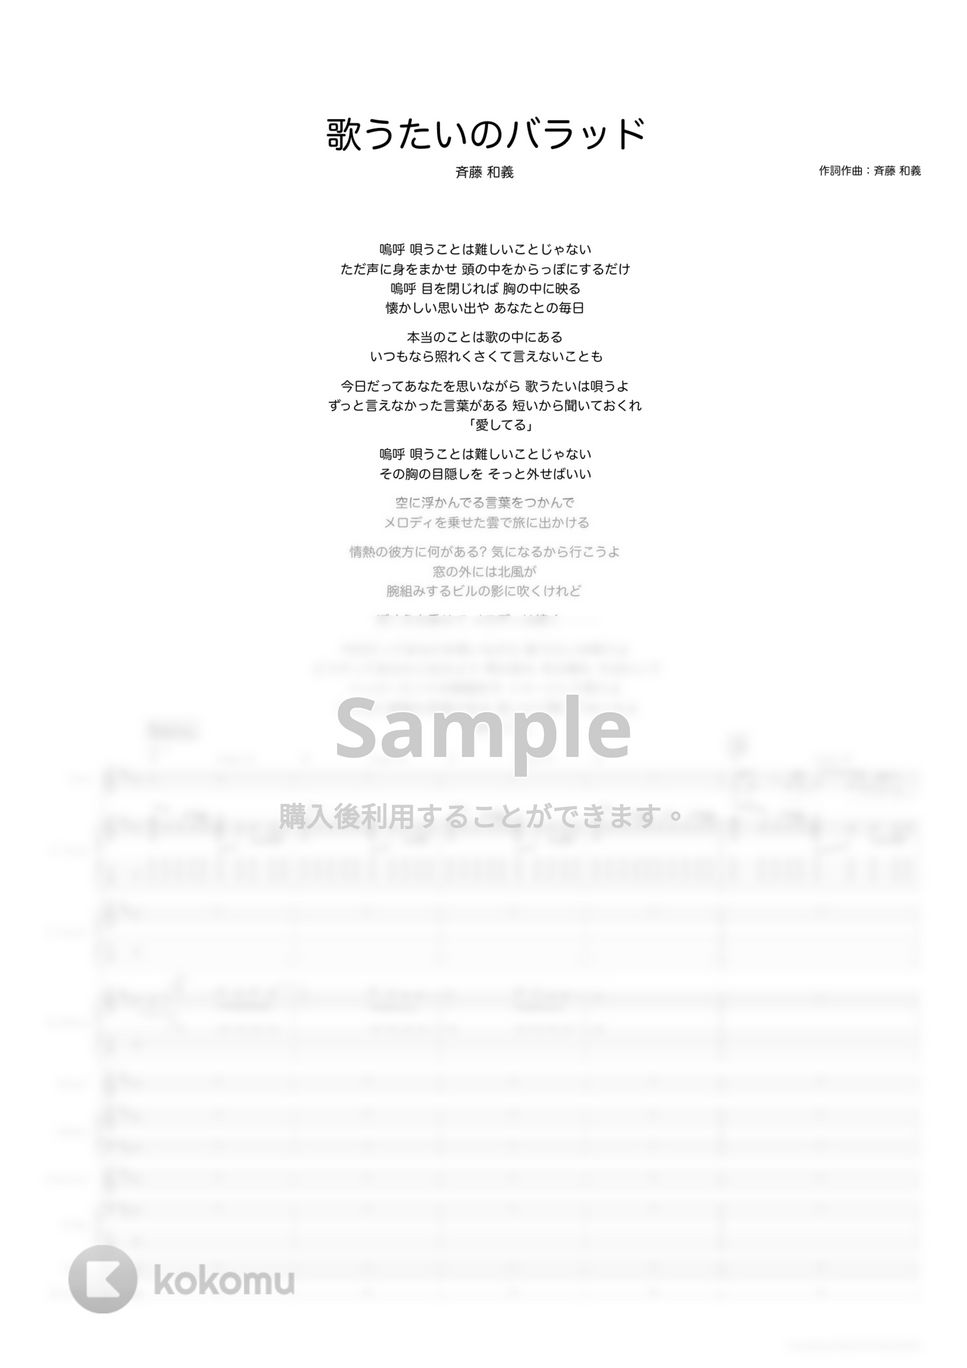 斉藤　和義 - 歌うたいのバラッド (バンドスコア) by TRIAD GUITAR SCHOOL